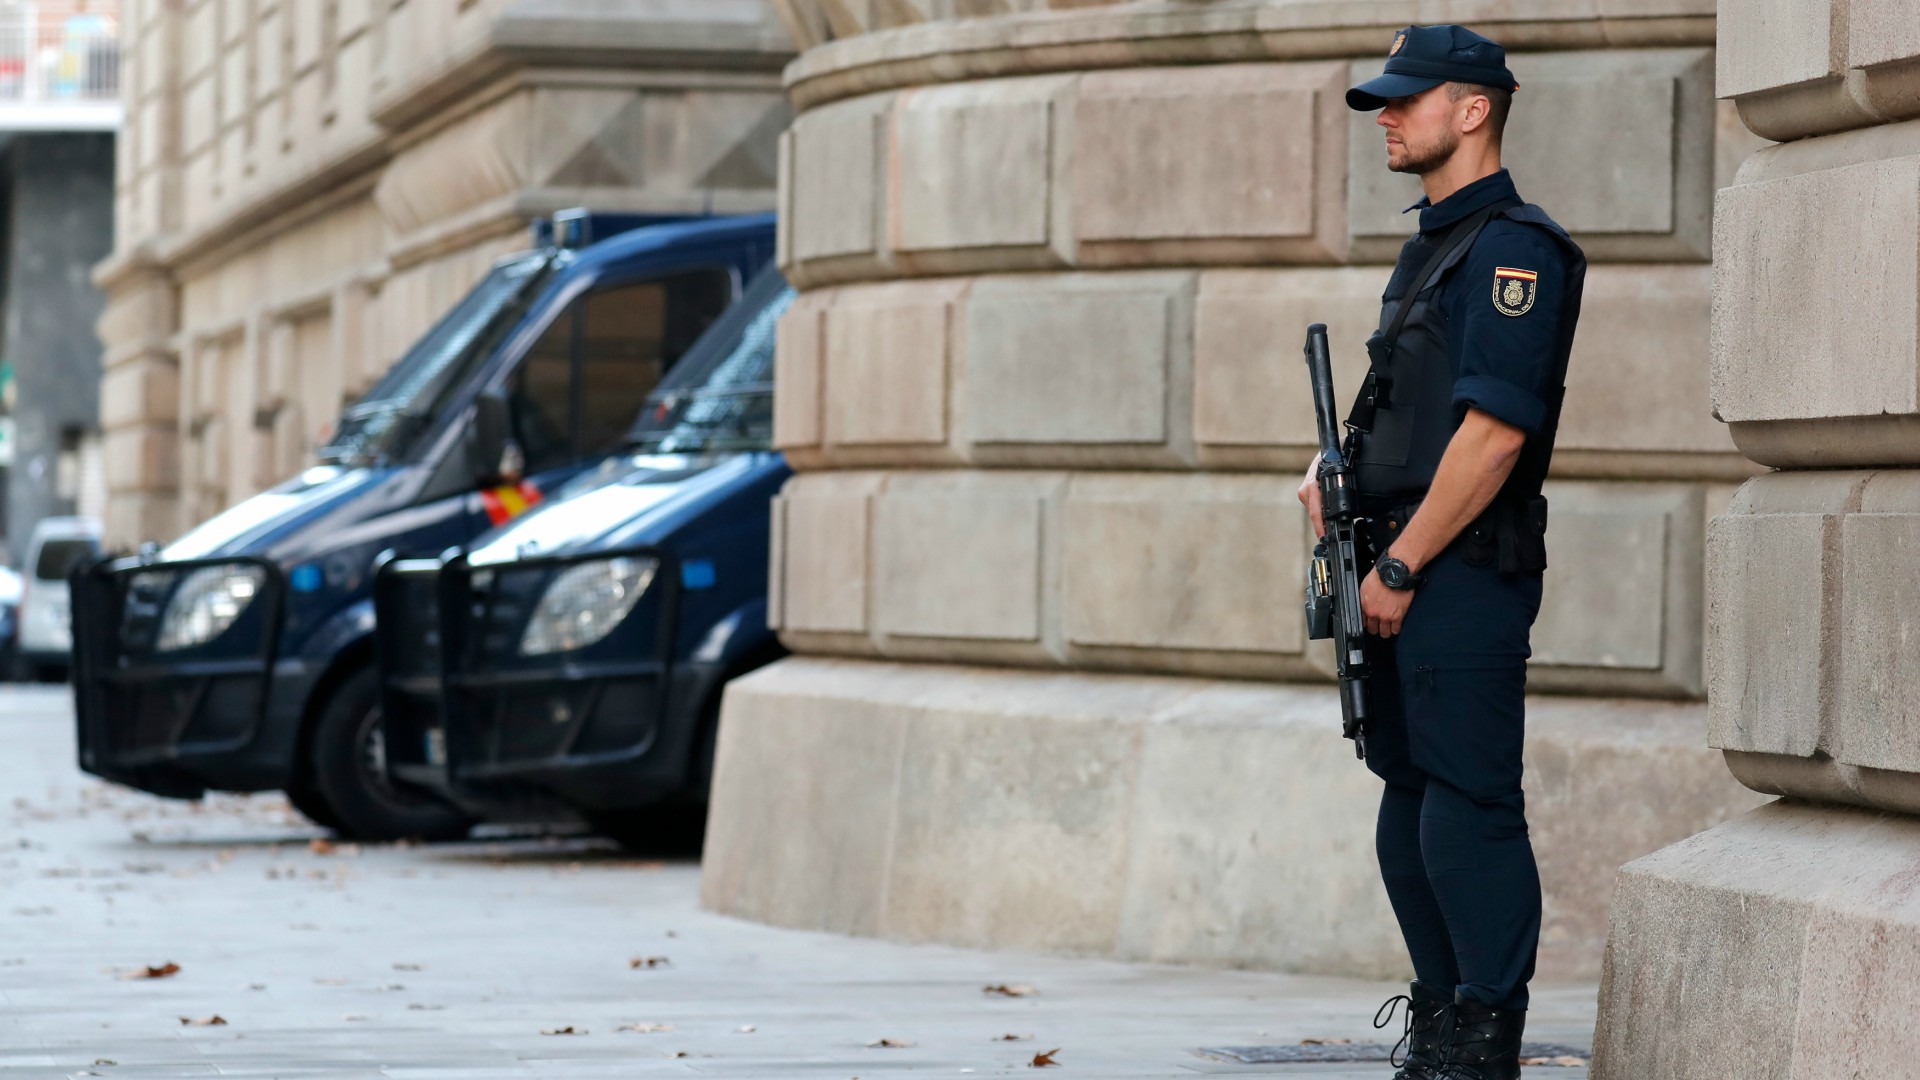 La seguridad del Palacio de Justicia de Cataluña pasa a la Policía Nacional en sustitución de los Mossos